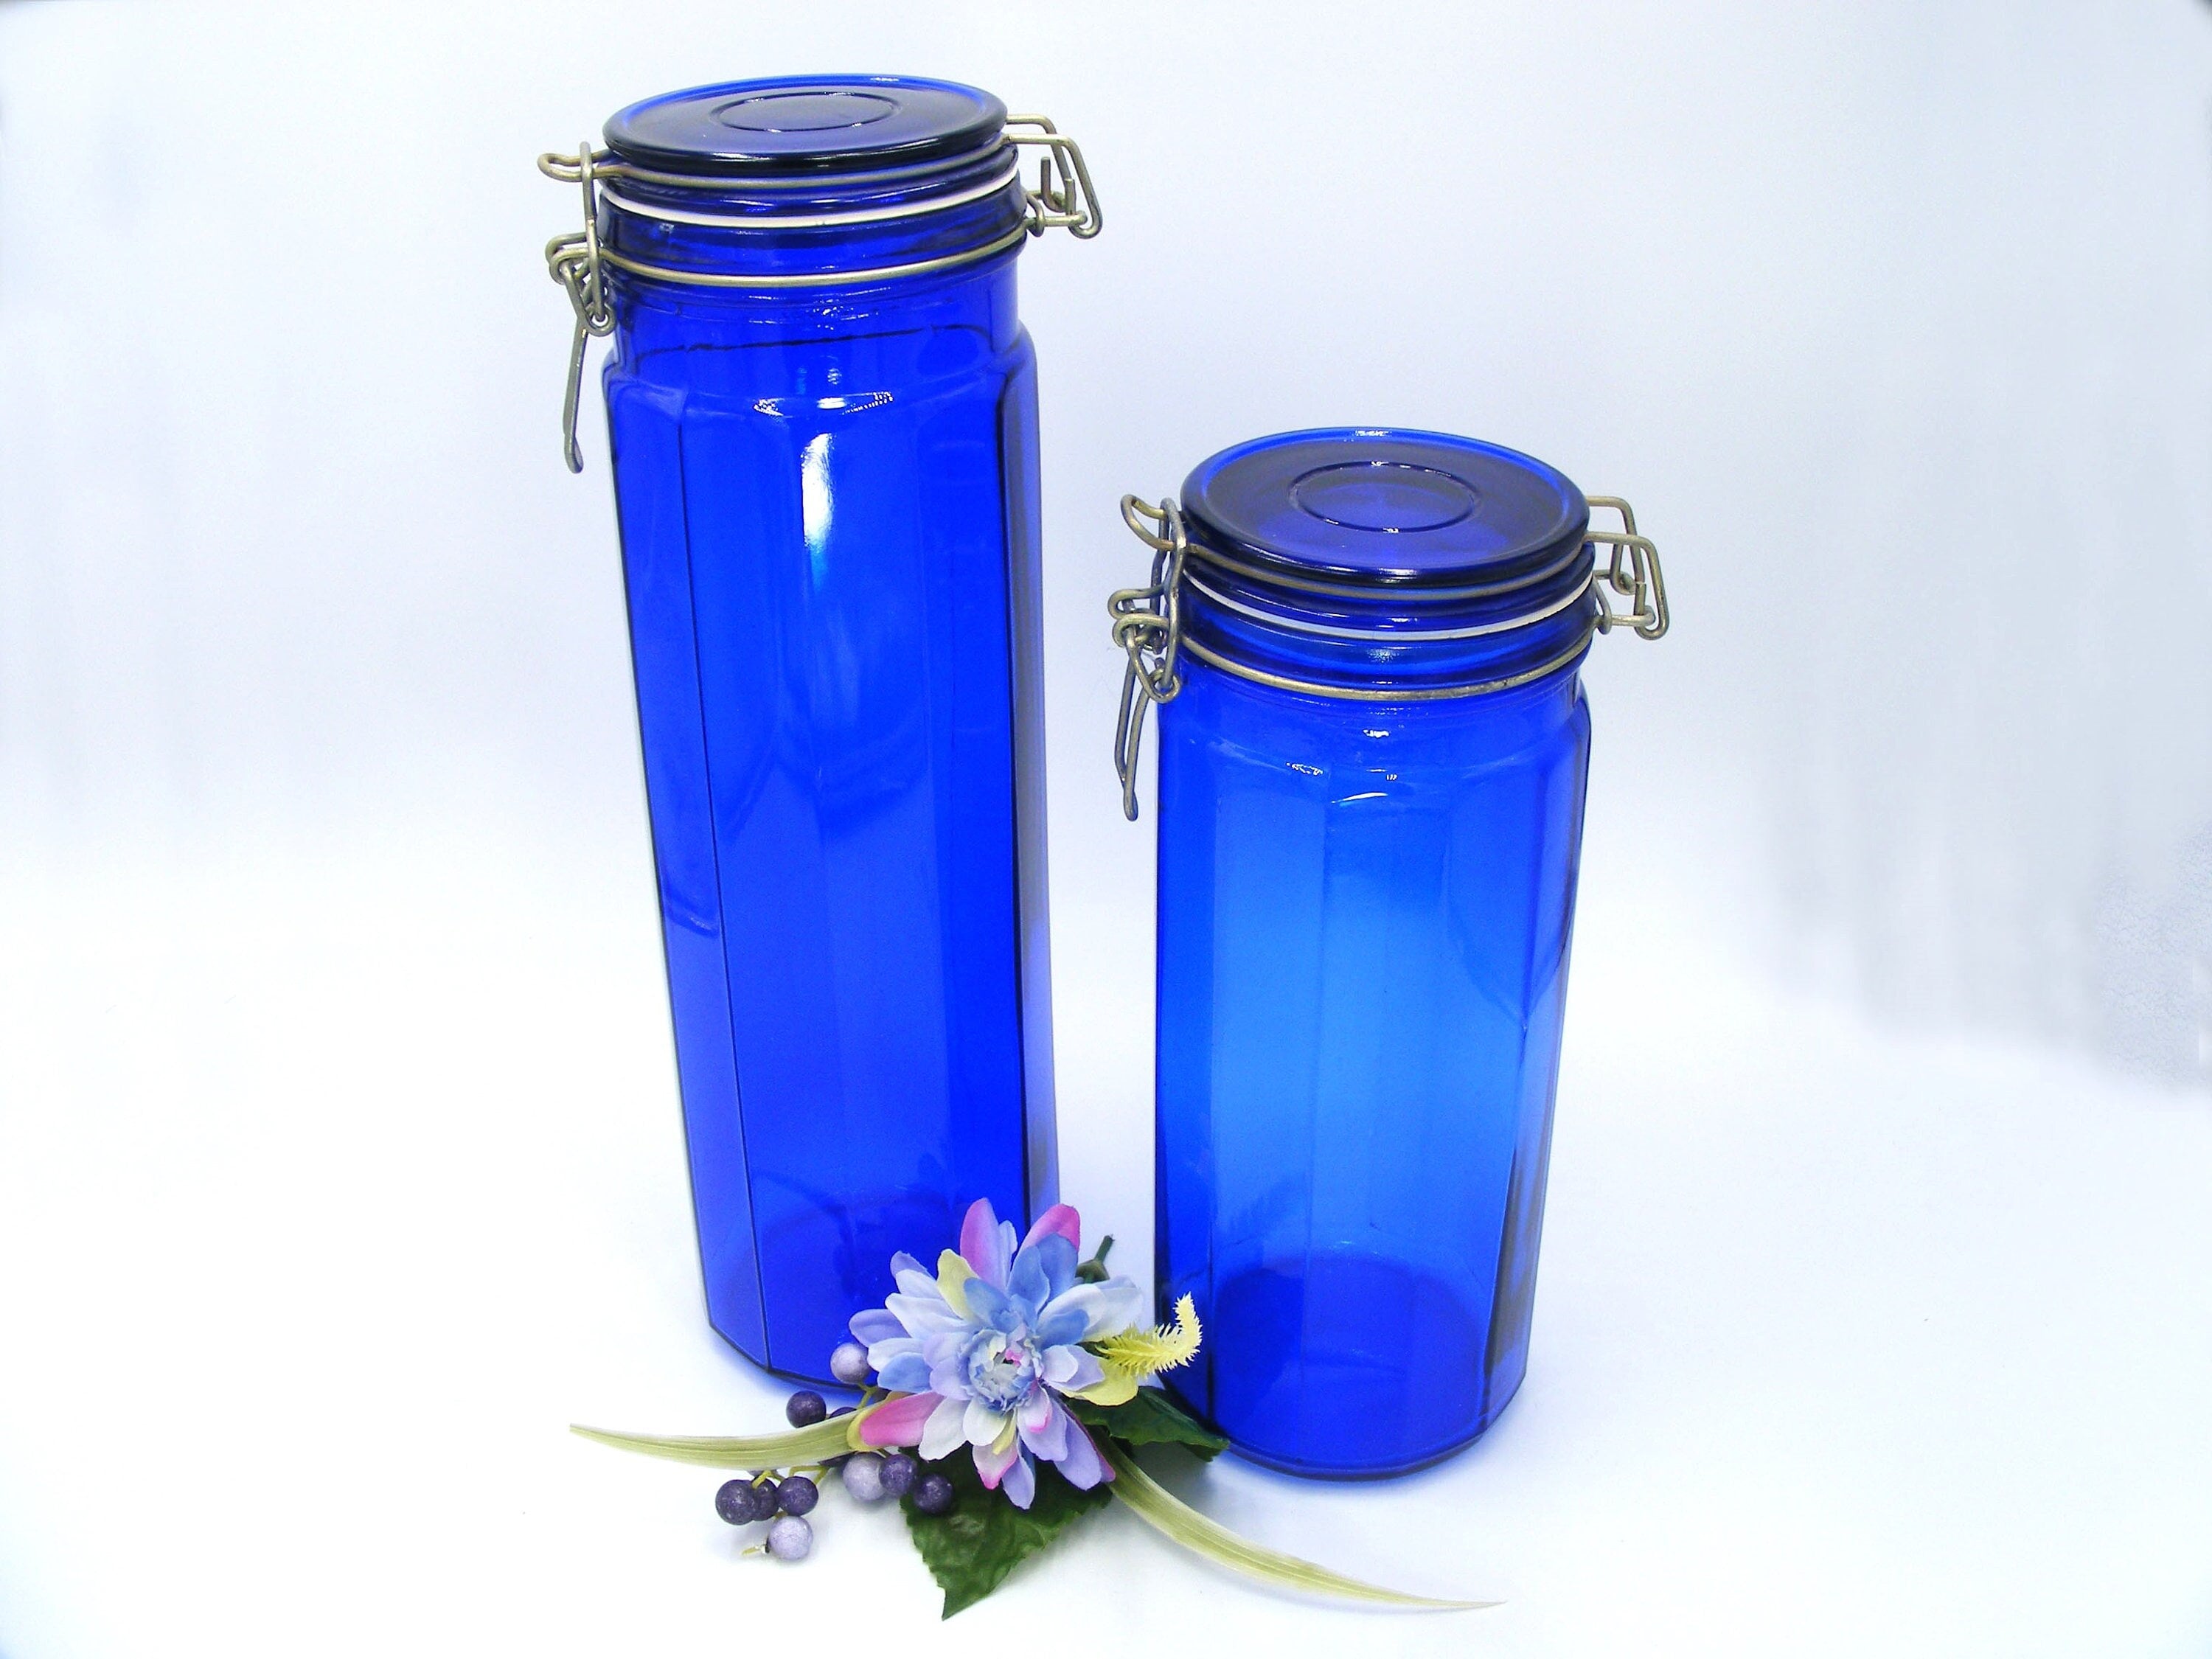 2 COBALT BLUE GLASS LARGE 12-SIDED MASON CLASP STORAGE JARS PANELED STORAGE